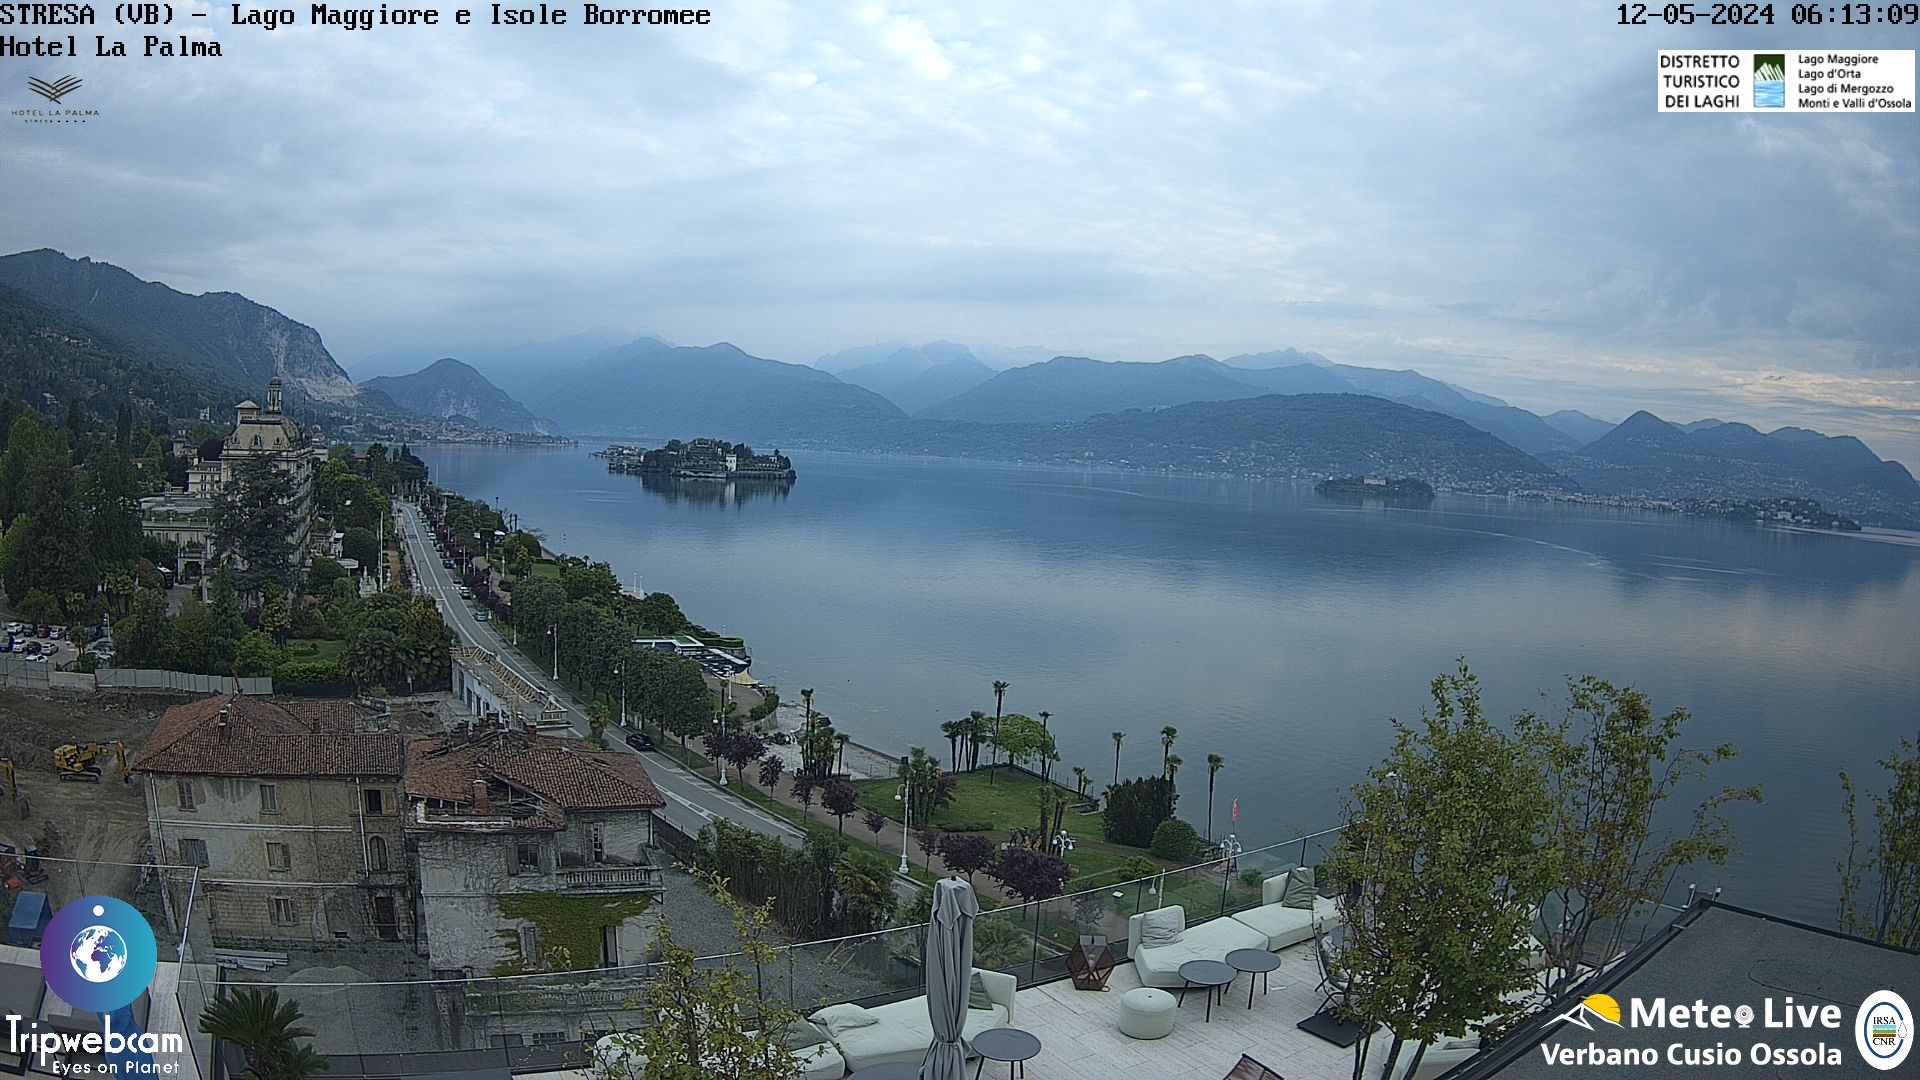 Stresa (Lago Maggiore) Di. 07:18